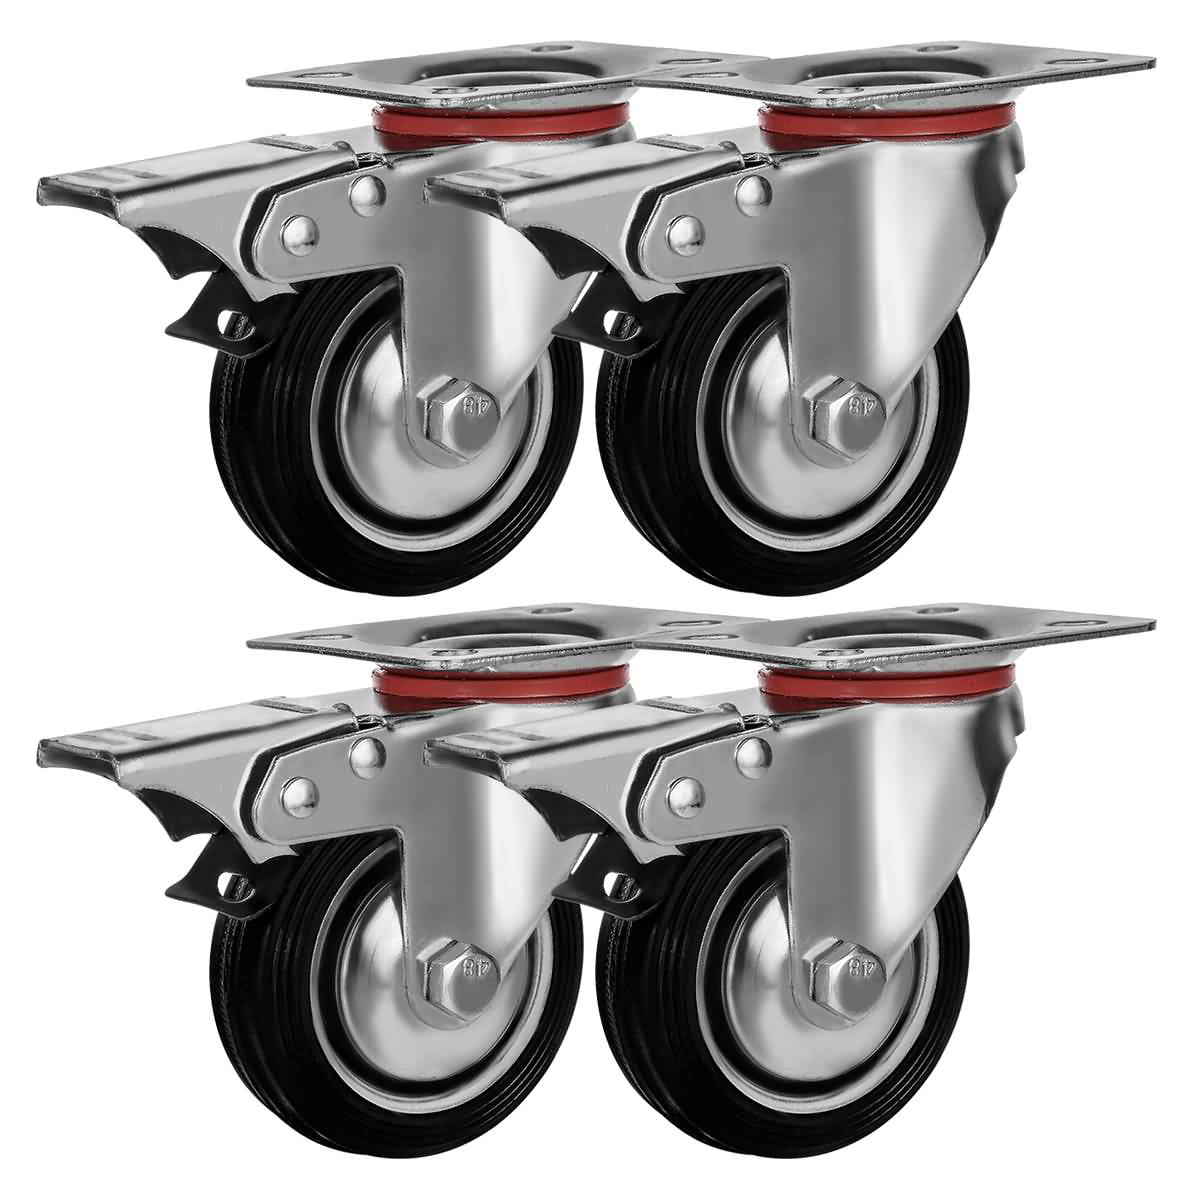 4 x Heavy Duty 30 mm Rubber Swivel Castor Wheels Trolley Furniture Bearing NEW N 